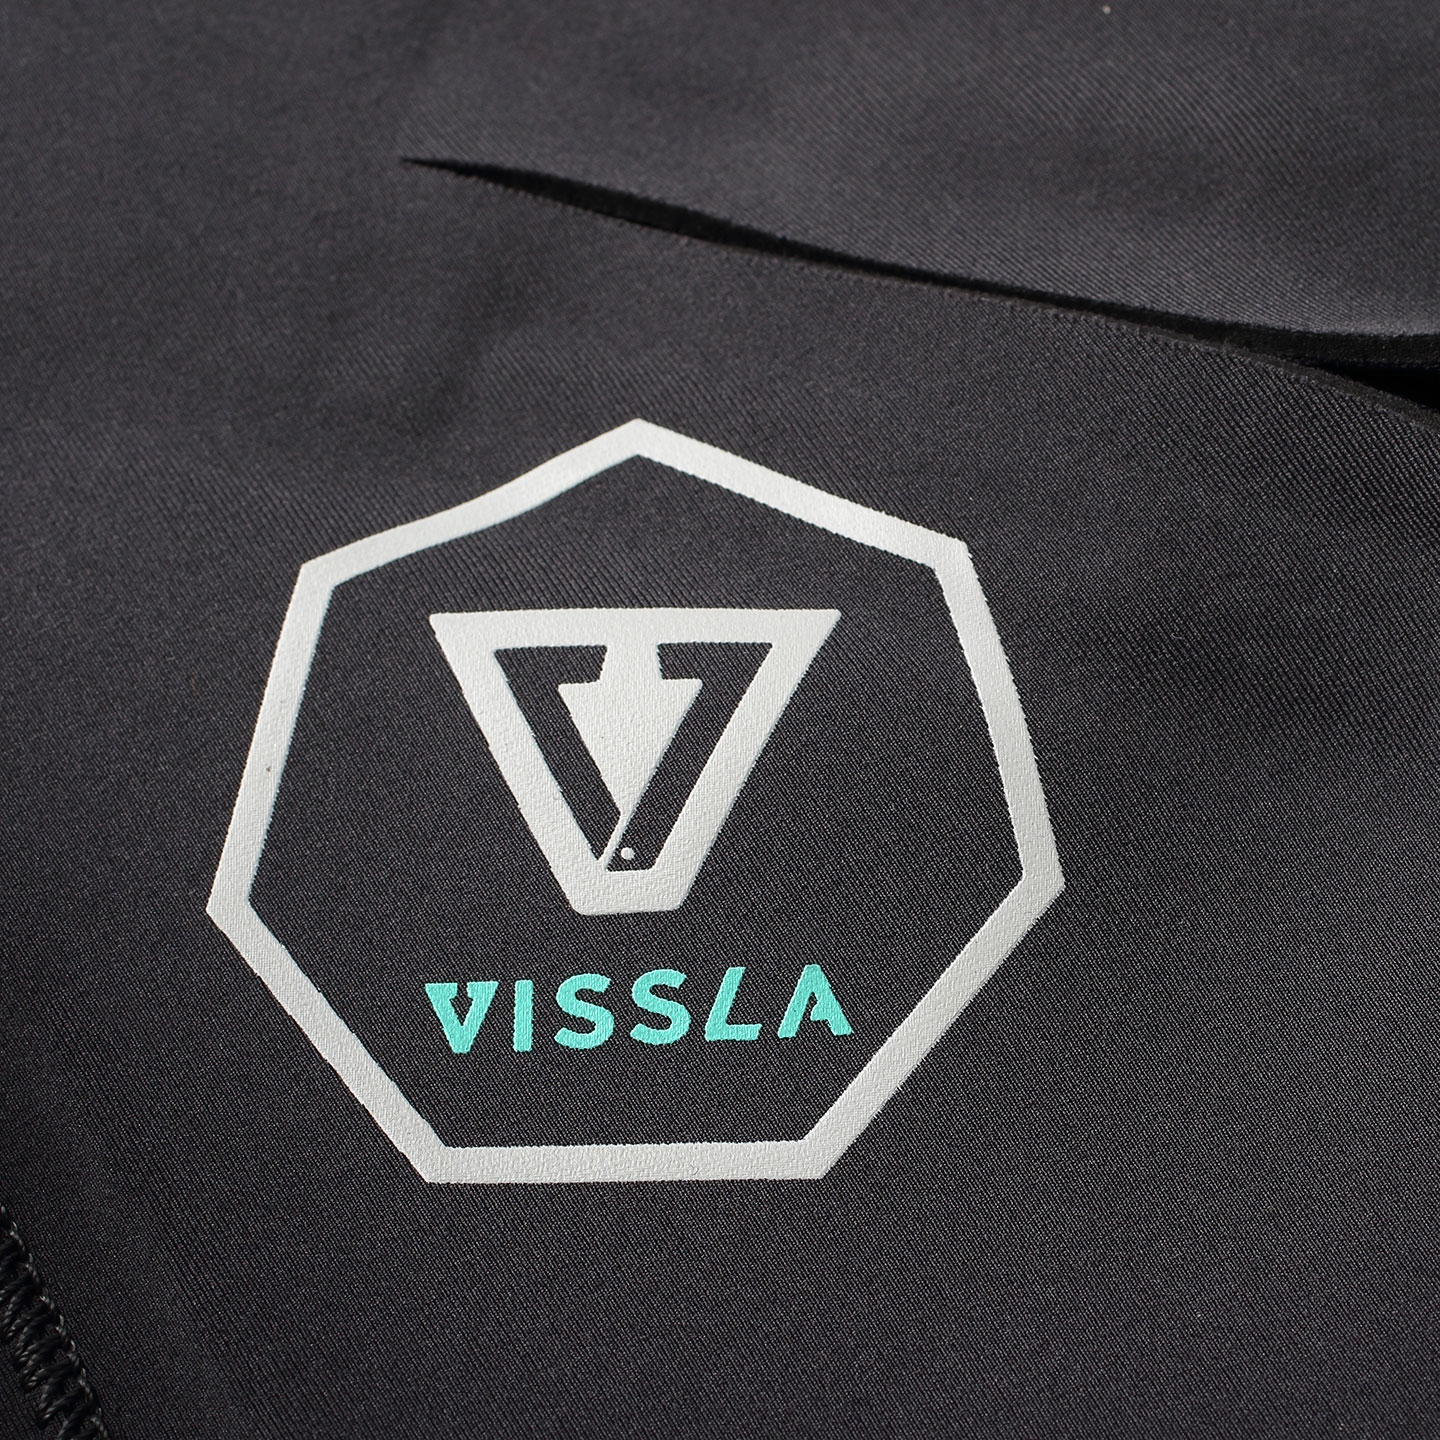 Vissla 7 Seas Wetsuit Review